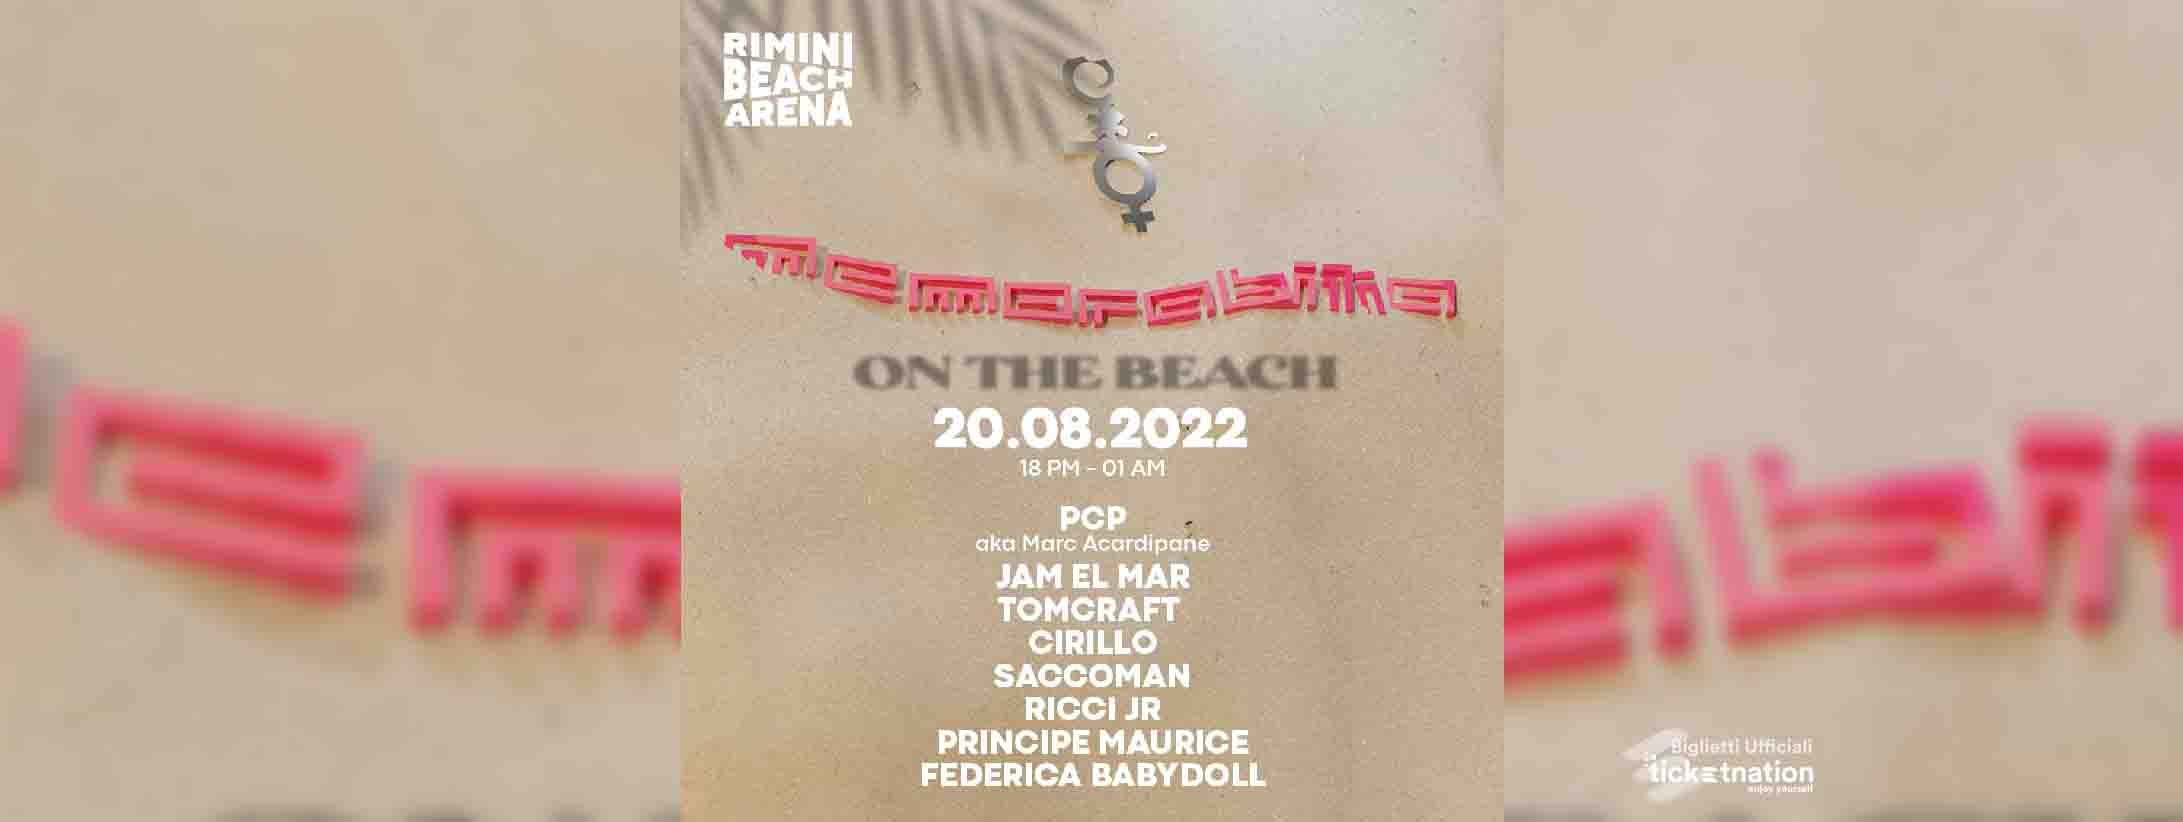 memorabilia-rimini-beach-arena-20-08-2022